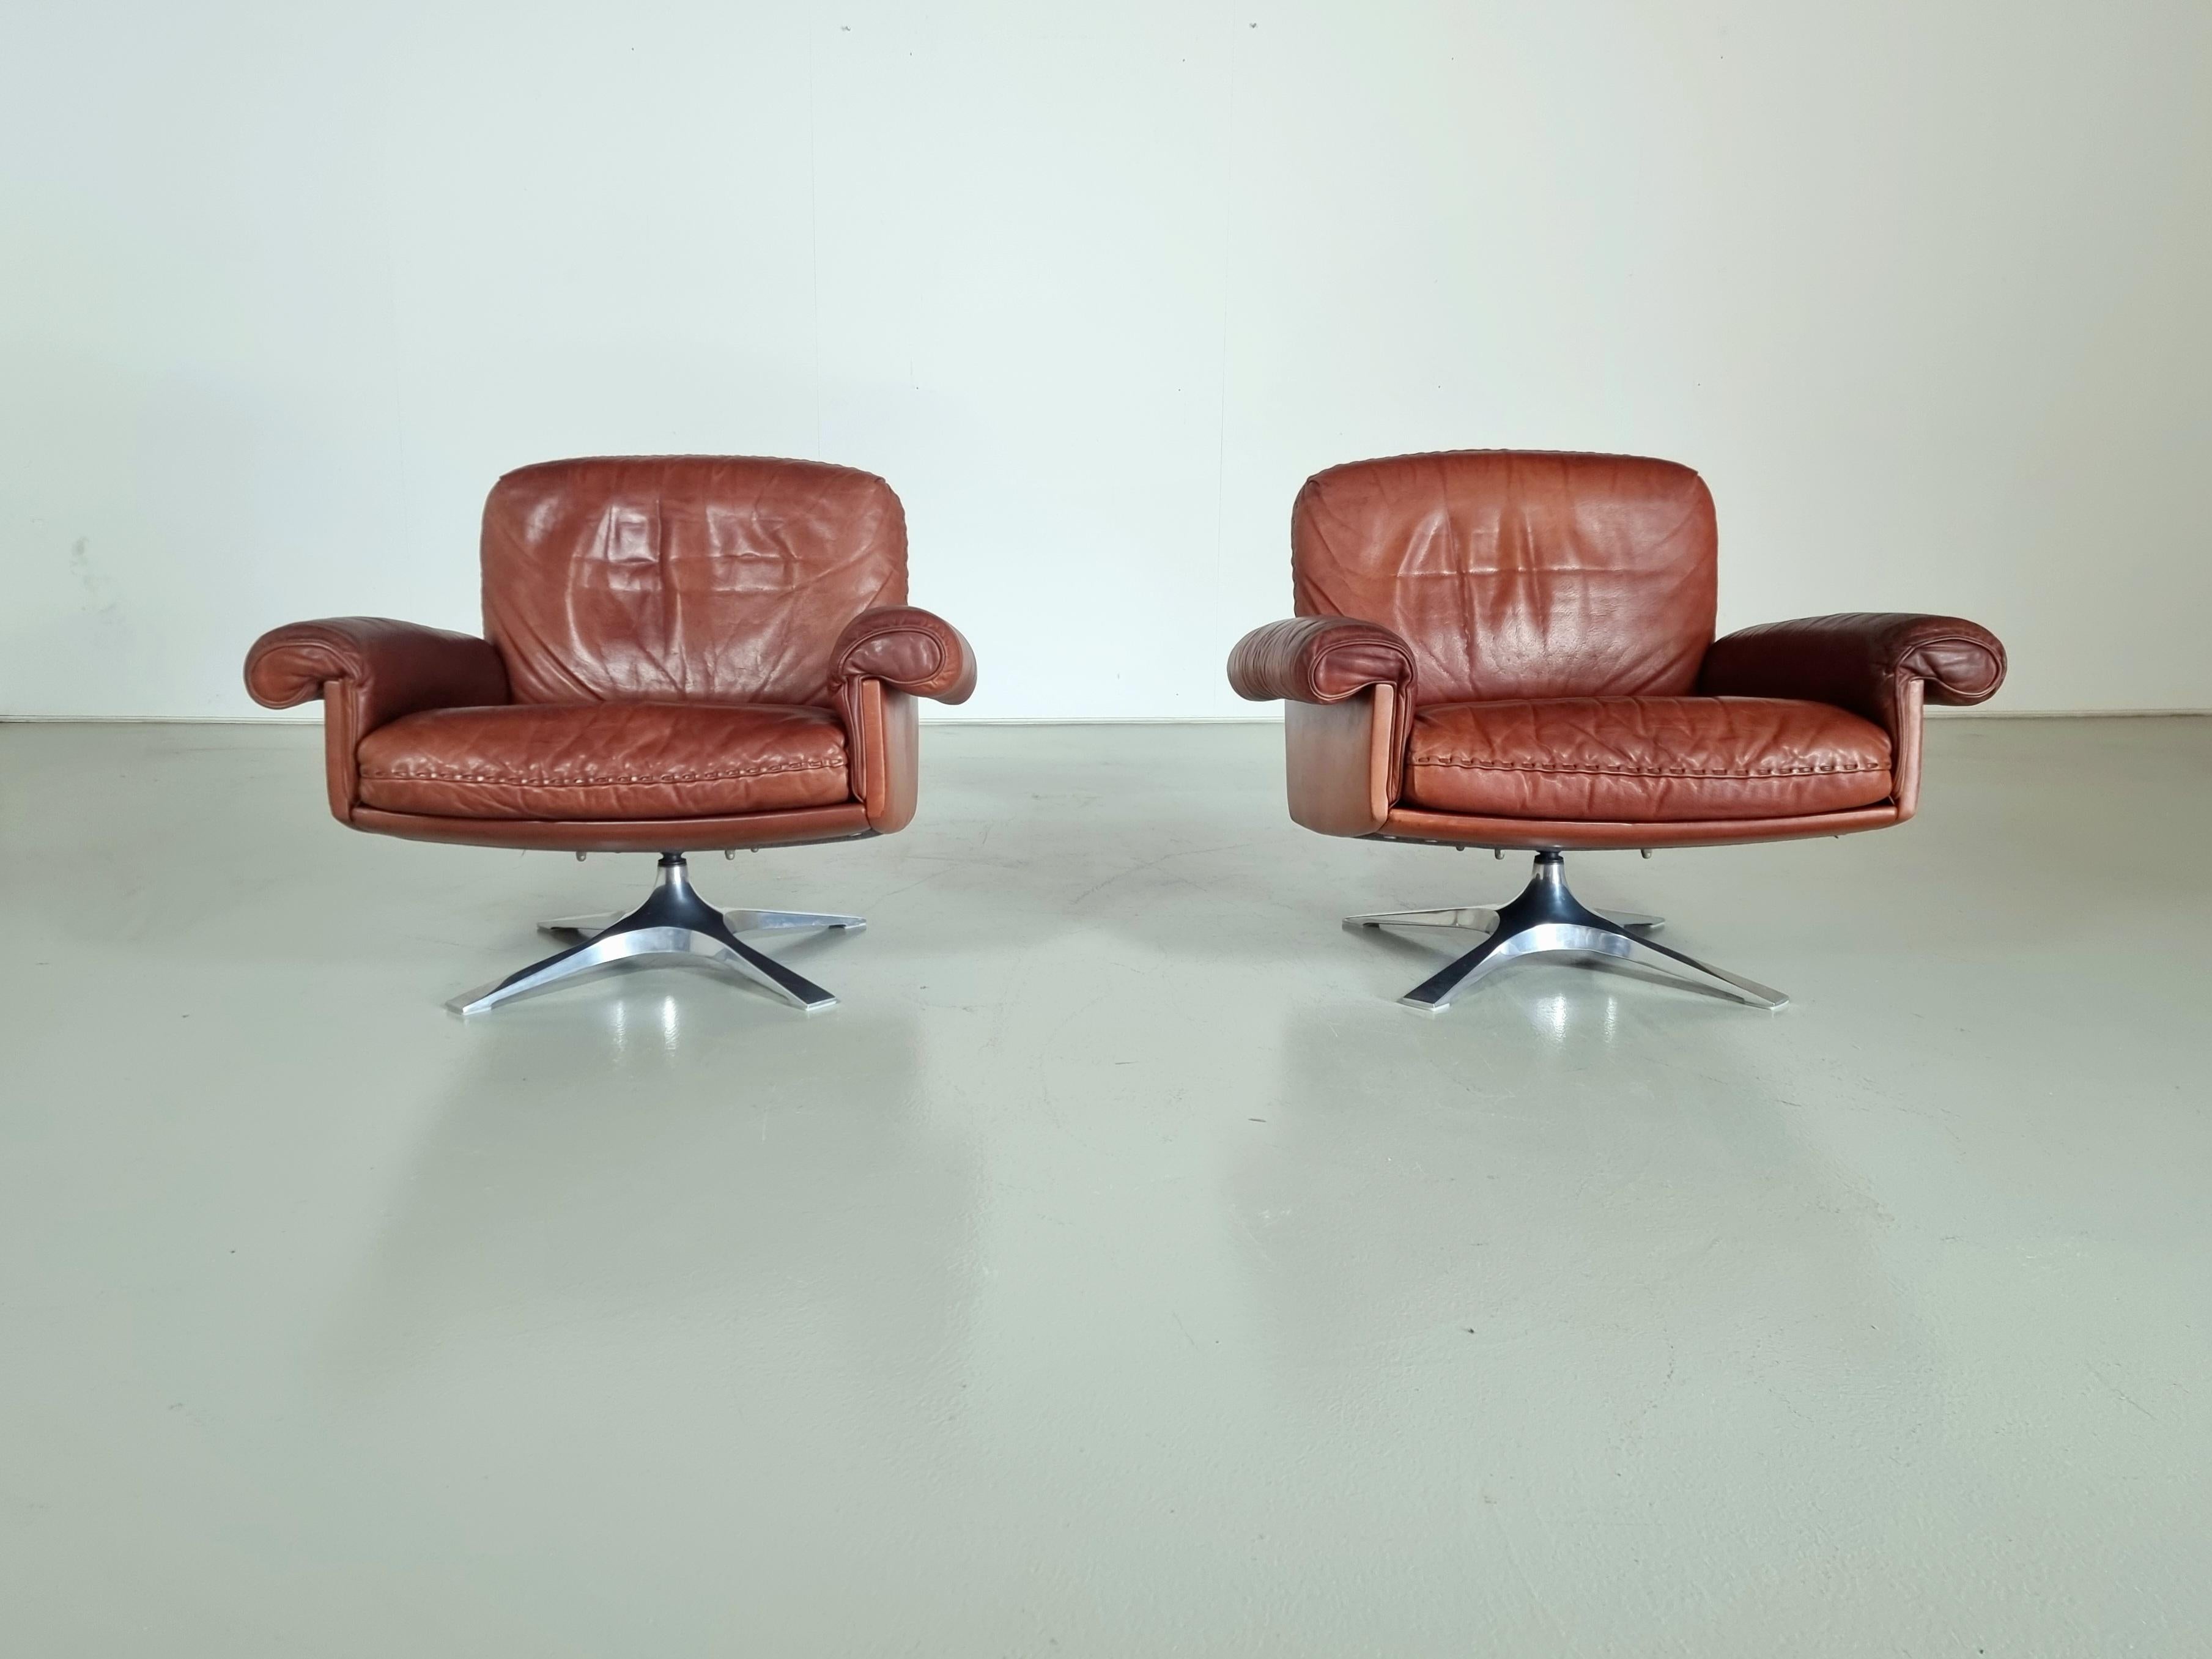 De Sede, paire de chaises longues modèle ''DS-31'', cuir, métal chromé, Suisse, années 1970.

L'assise profonde et les accoudoirs incurvés garantissent une expérience d'assise confortable. De plus, les épais coussins d'assise en cuir offrent un